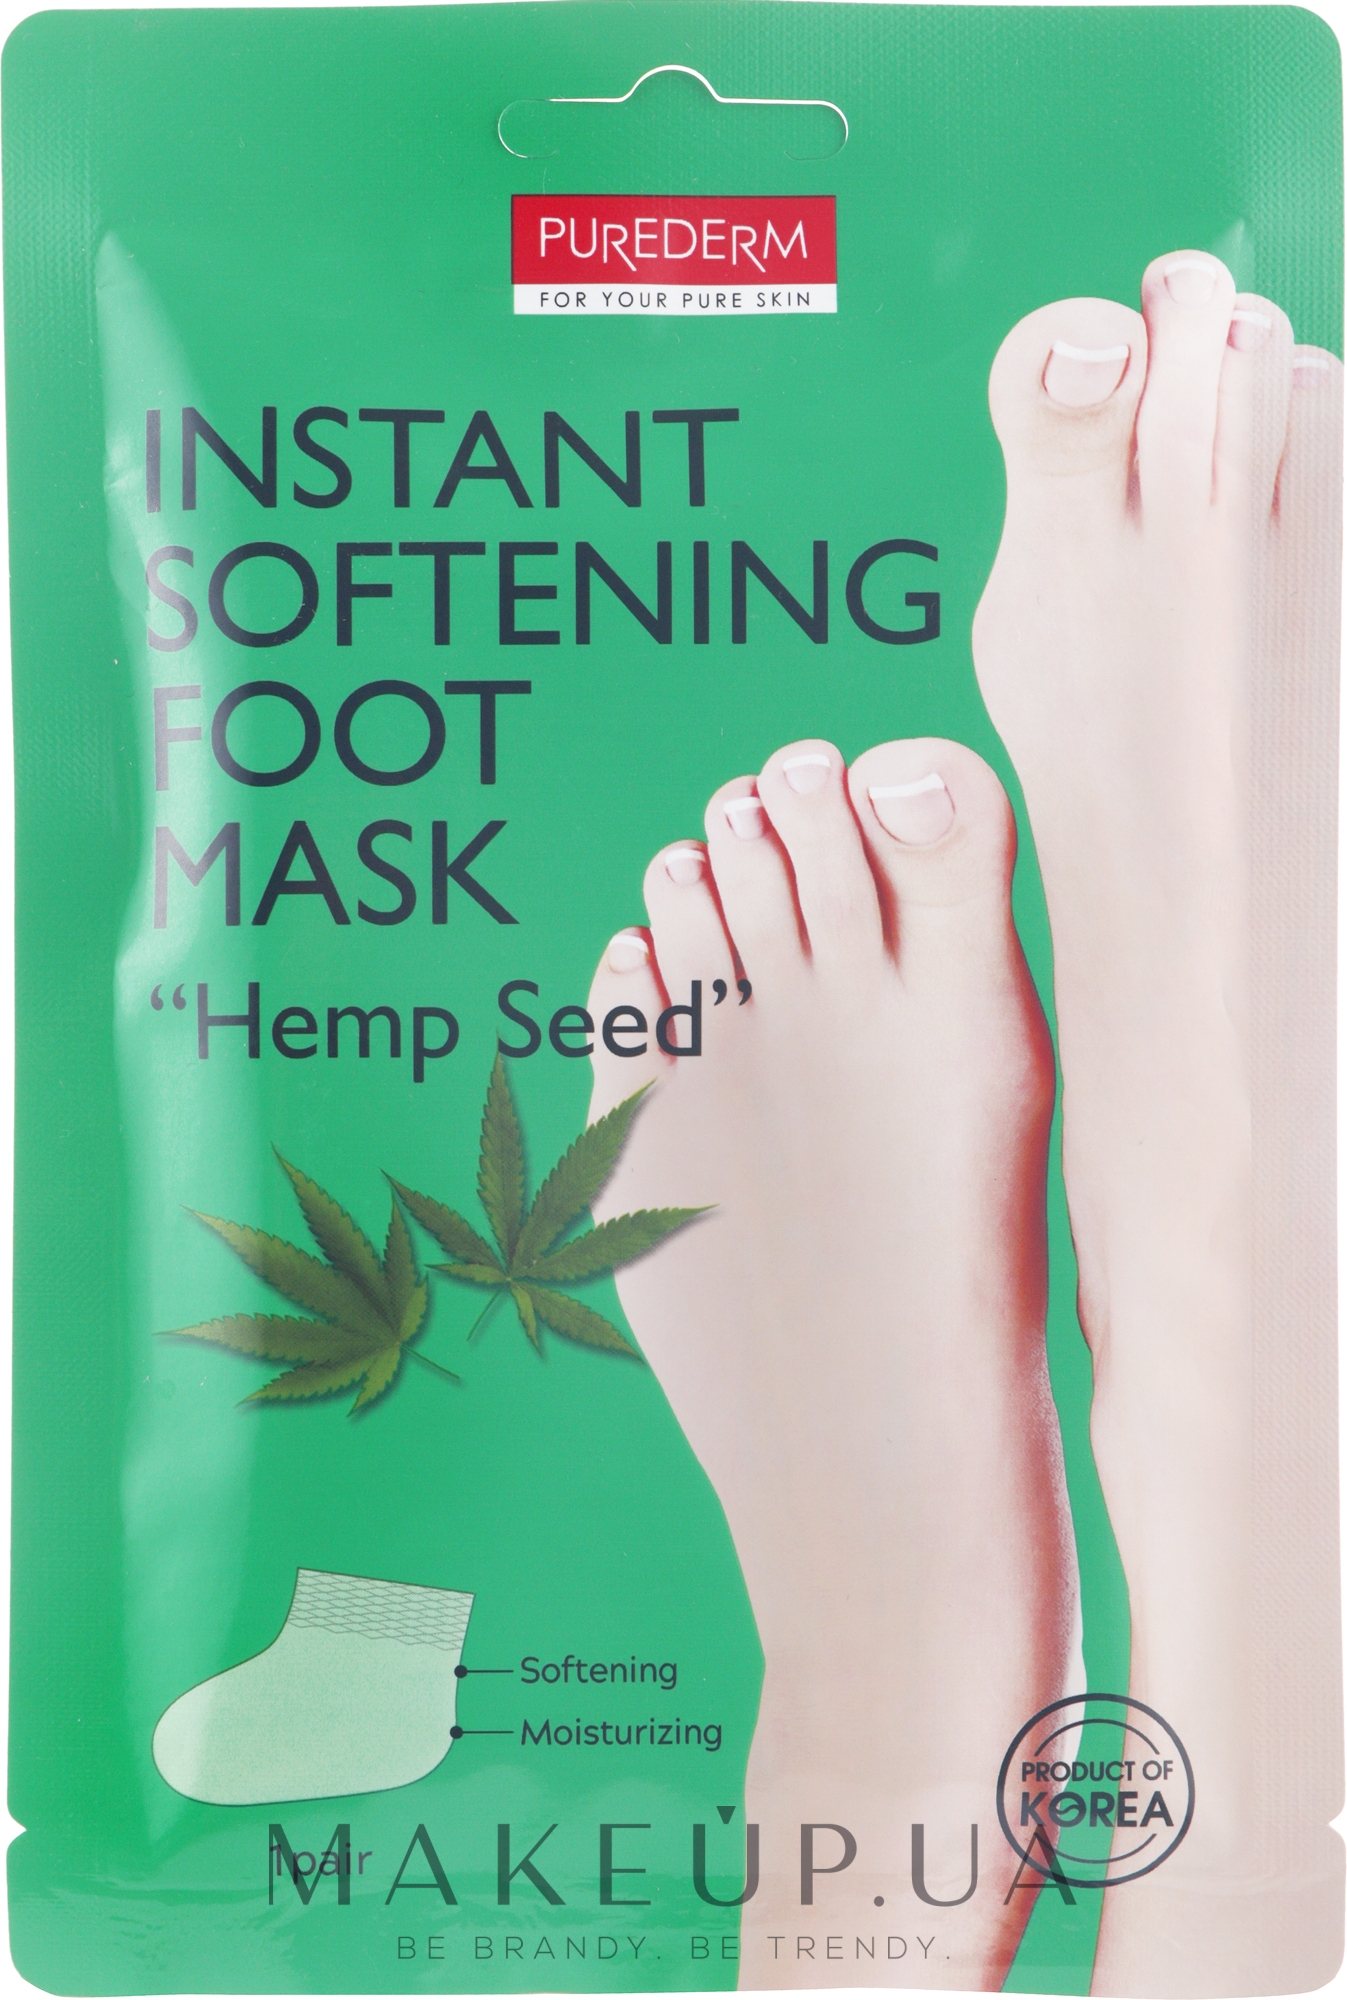 Смягчающая маска для ног c маслом семян конопли - Purderm Instant Softening Foot Mask "Hemp Seed" — фото 34g